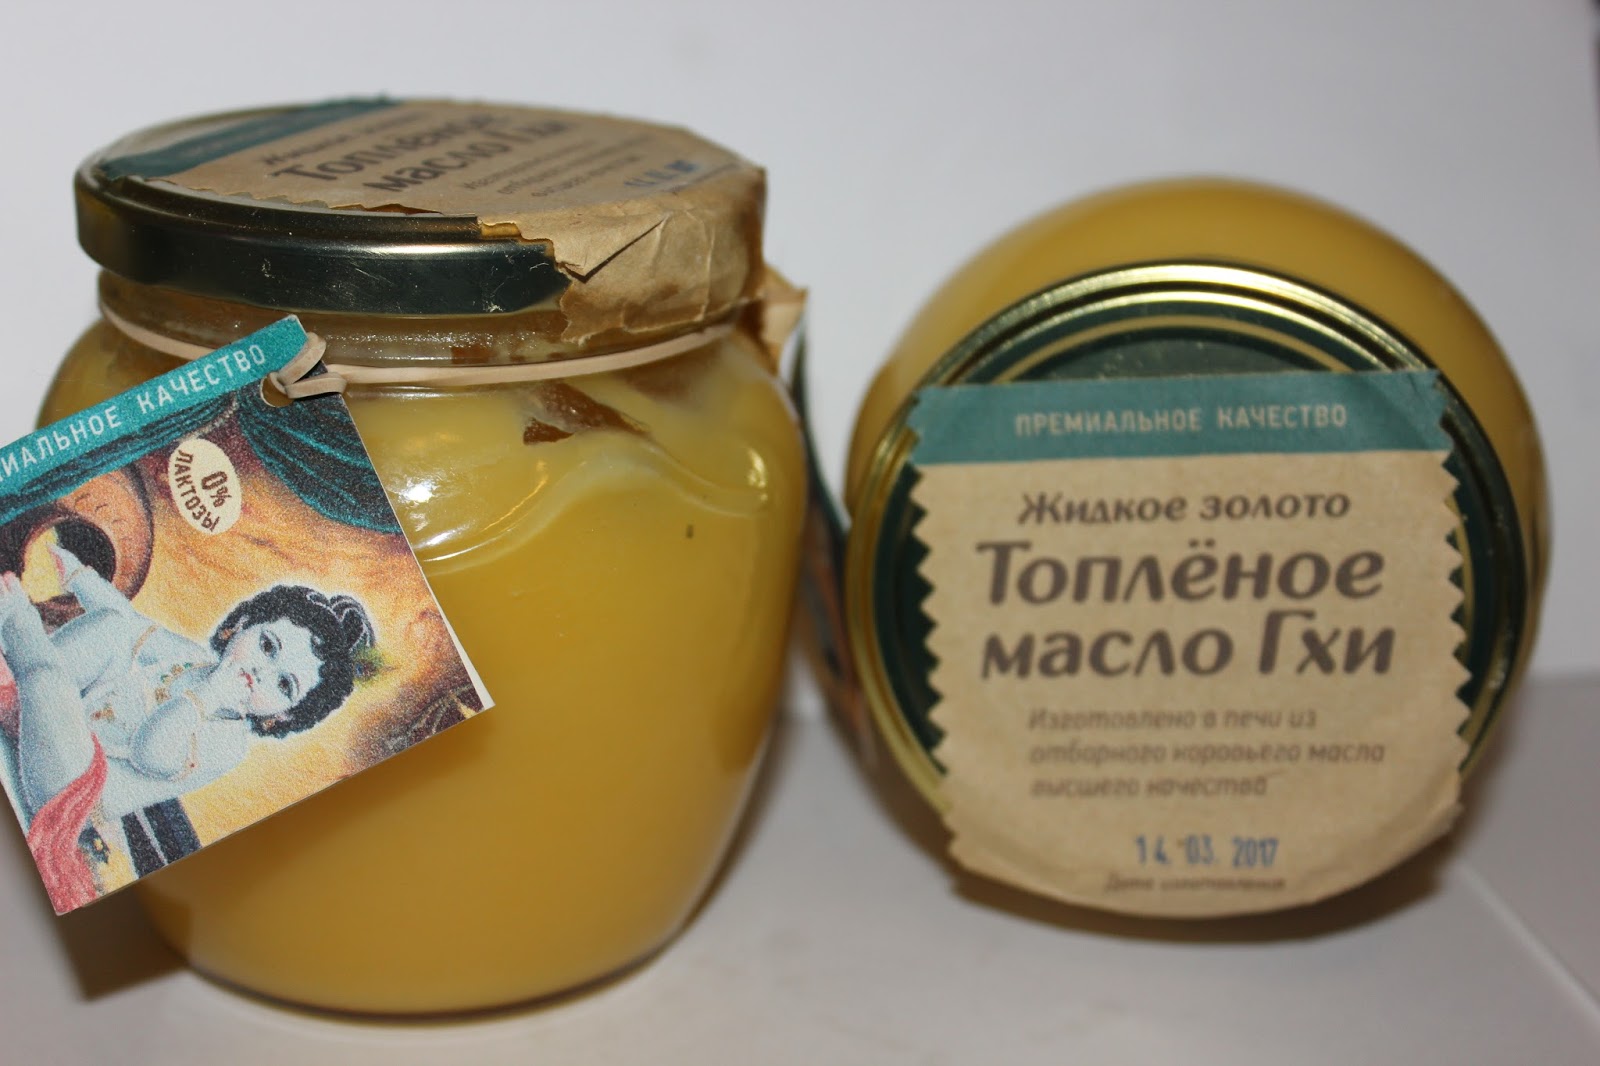 Масло топленое золотое качество. Топленое масло. Масло топленое белорусское. Масло гхи жидкое золото. Масло гхи этикетка.